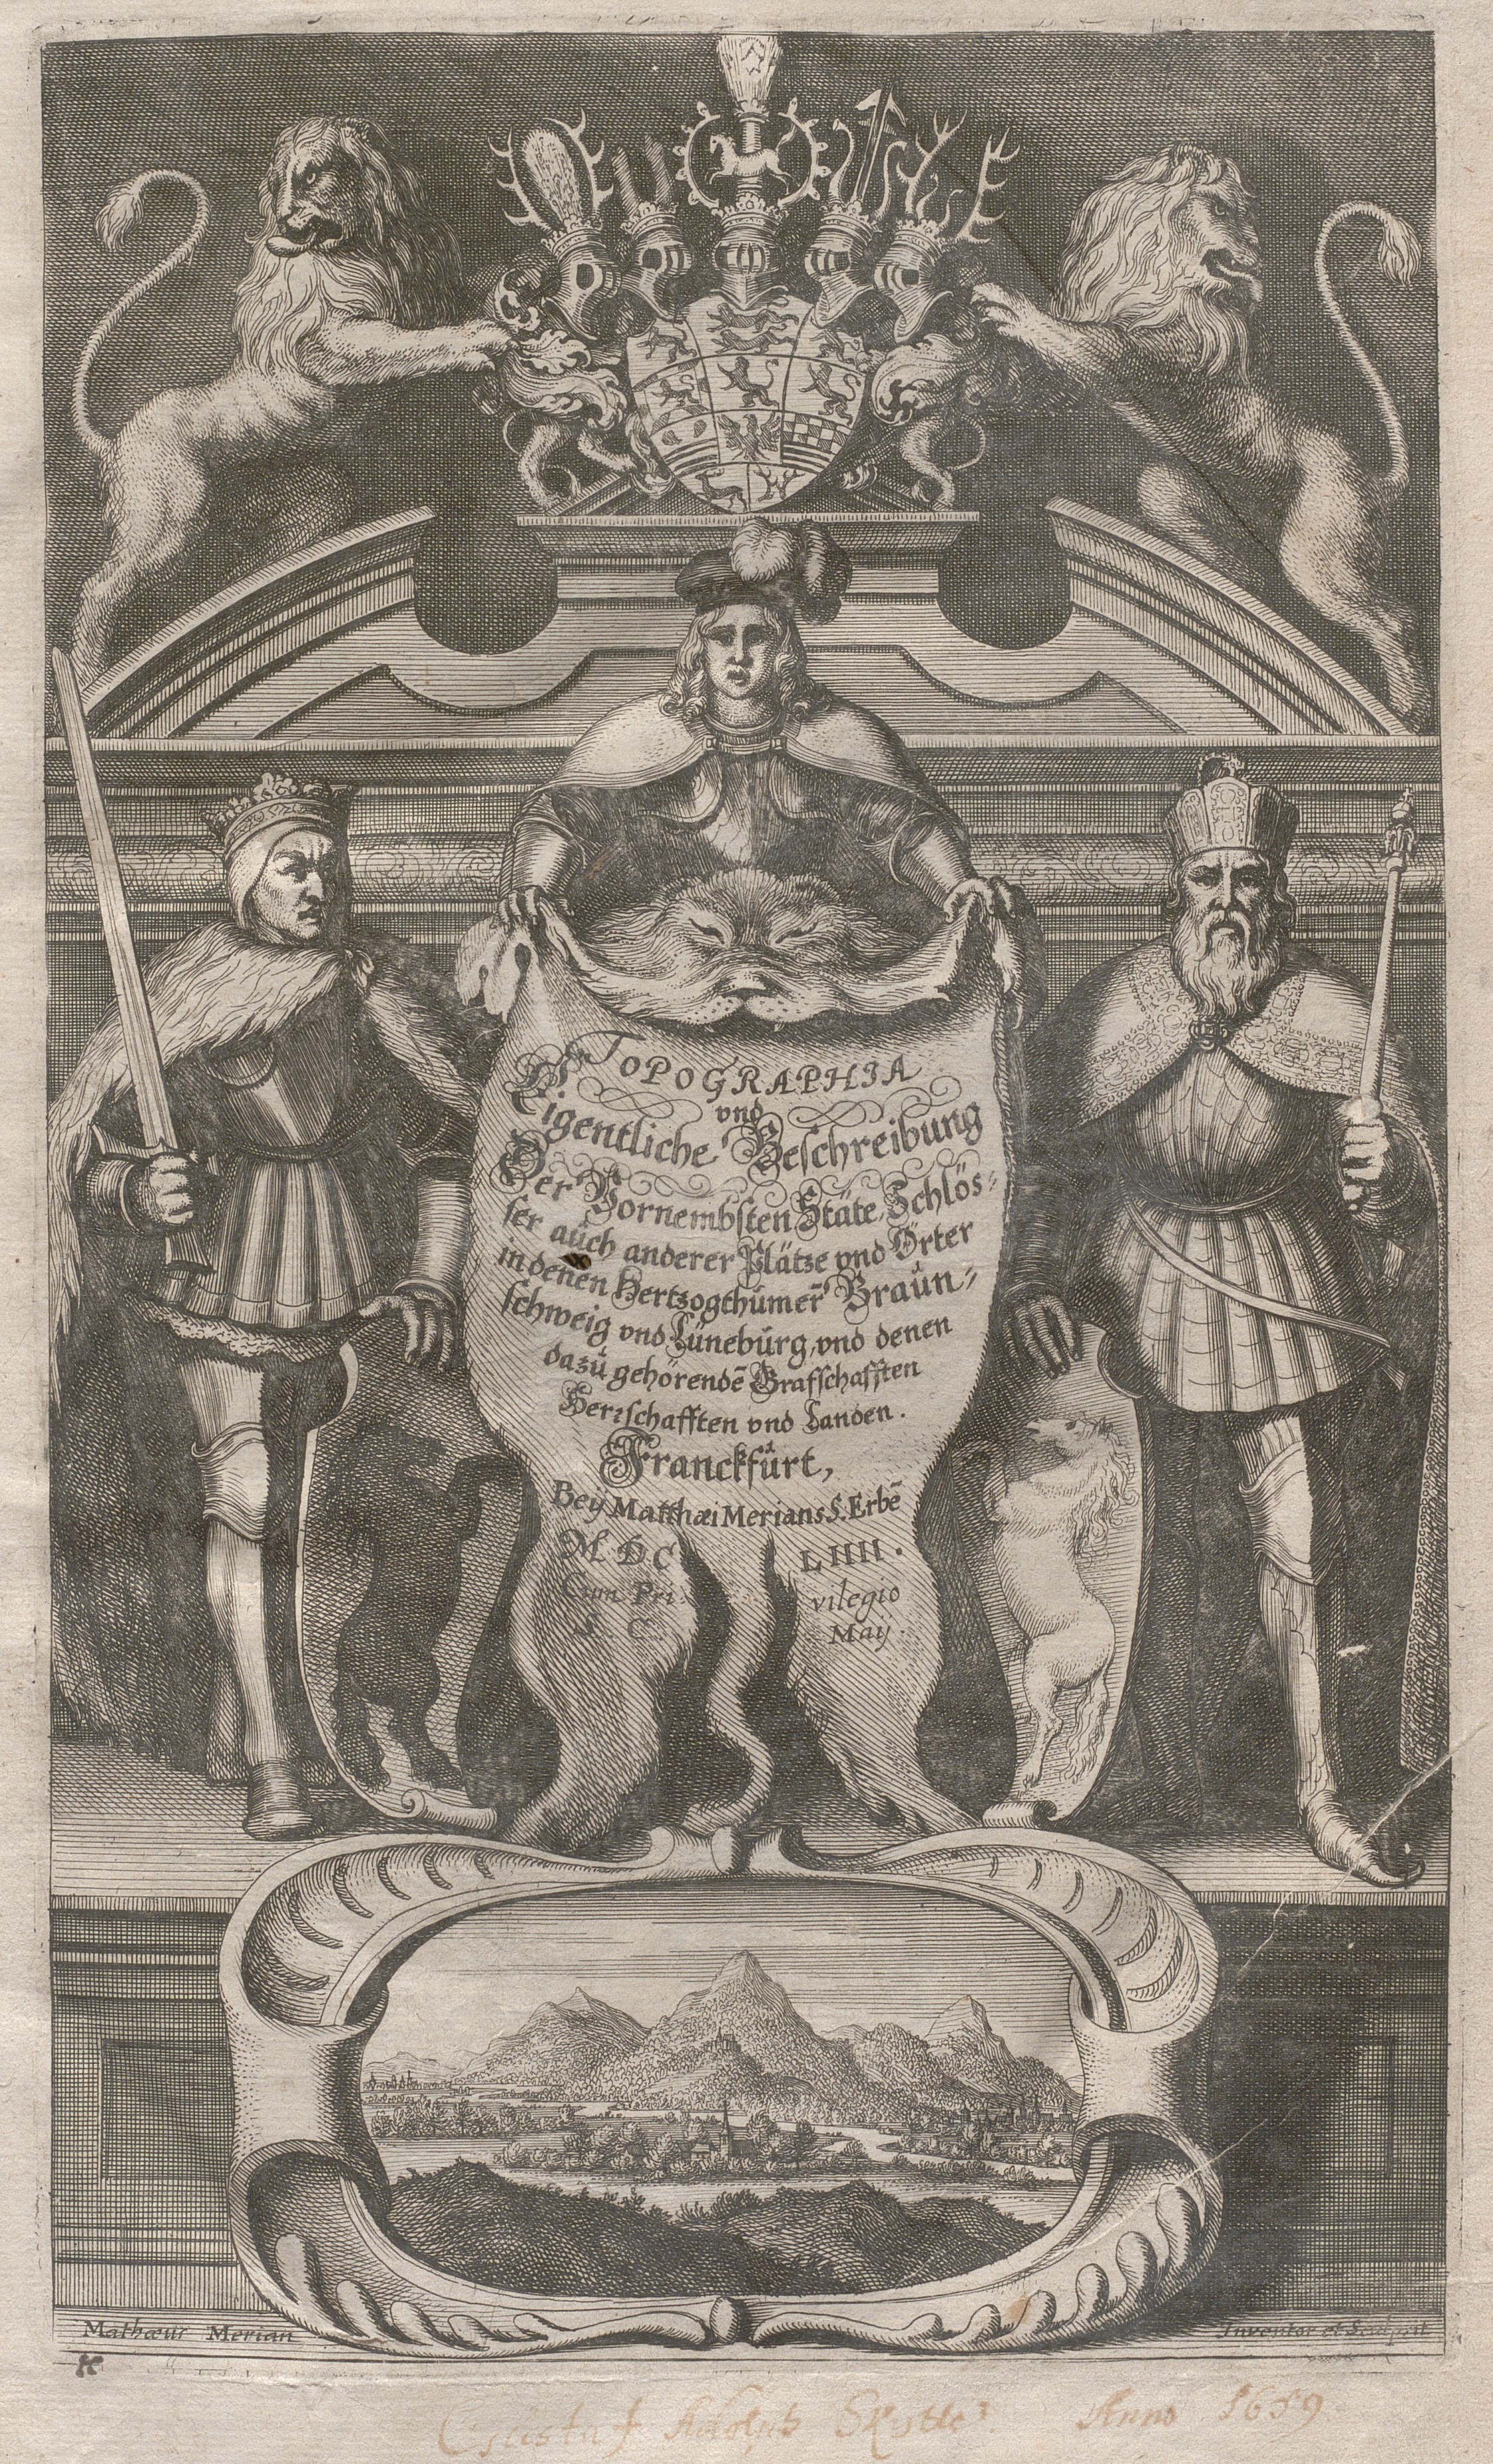 Titelblad med illustration av två kungar och en ädling i rustning som håller i ett björnskinn. Ovanför två lejon.